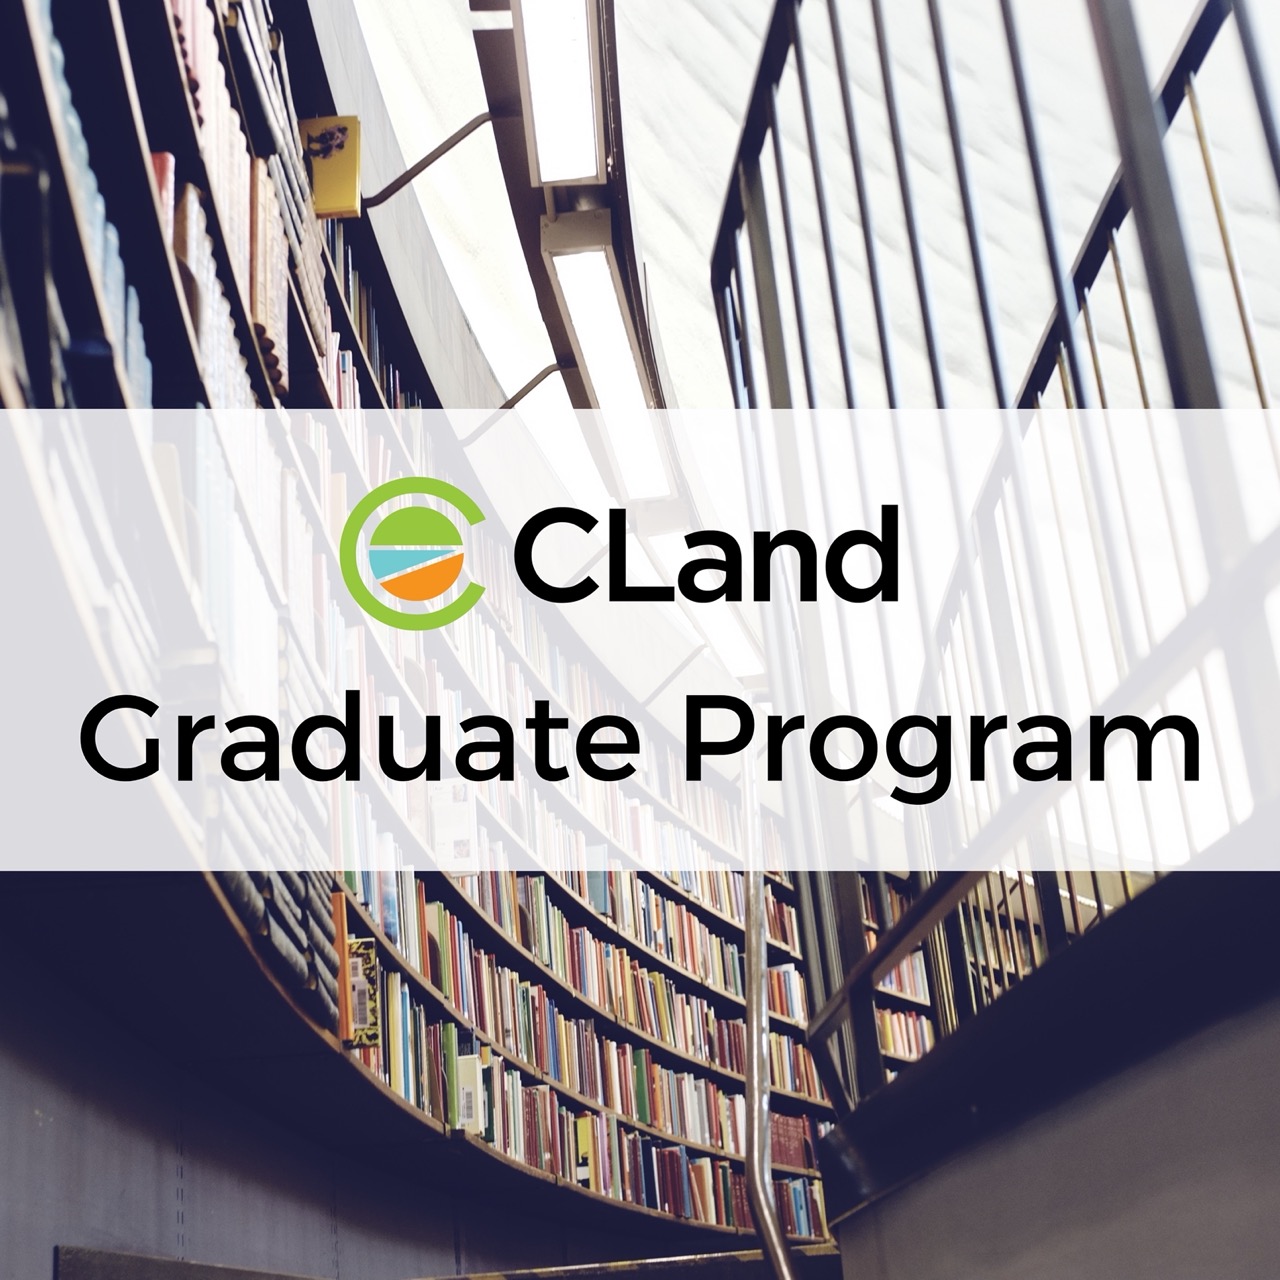 cland-graduate-program-discover